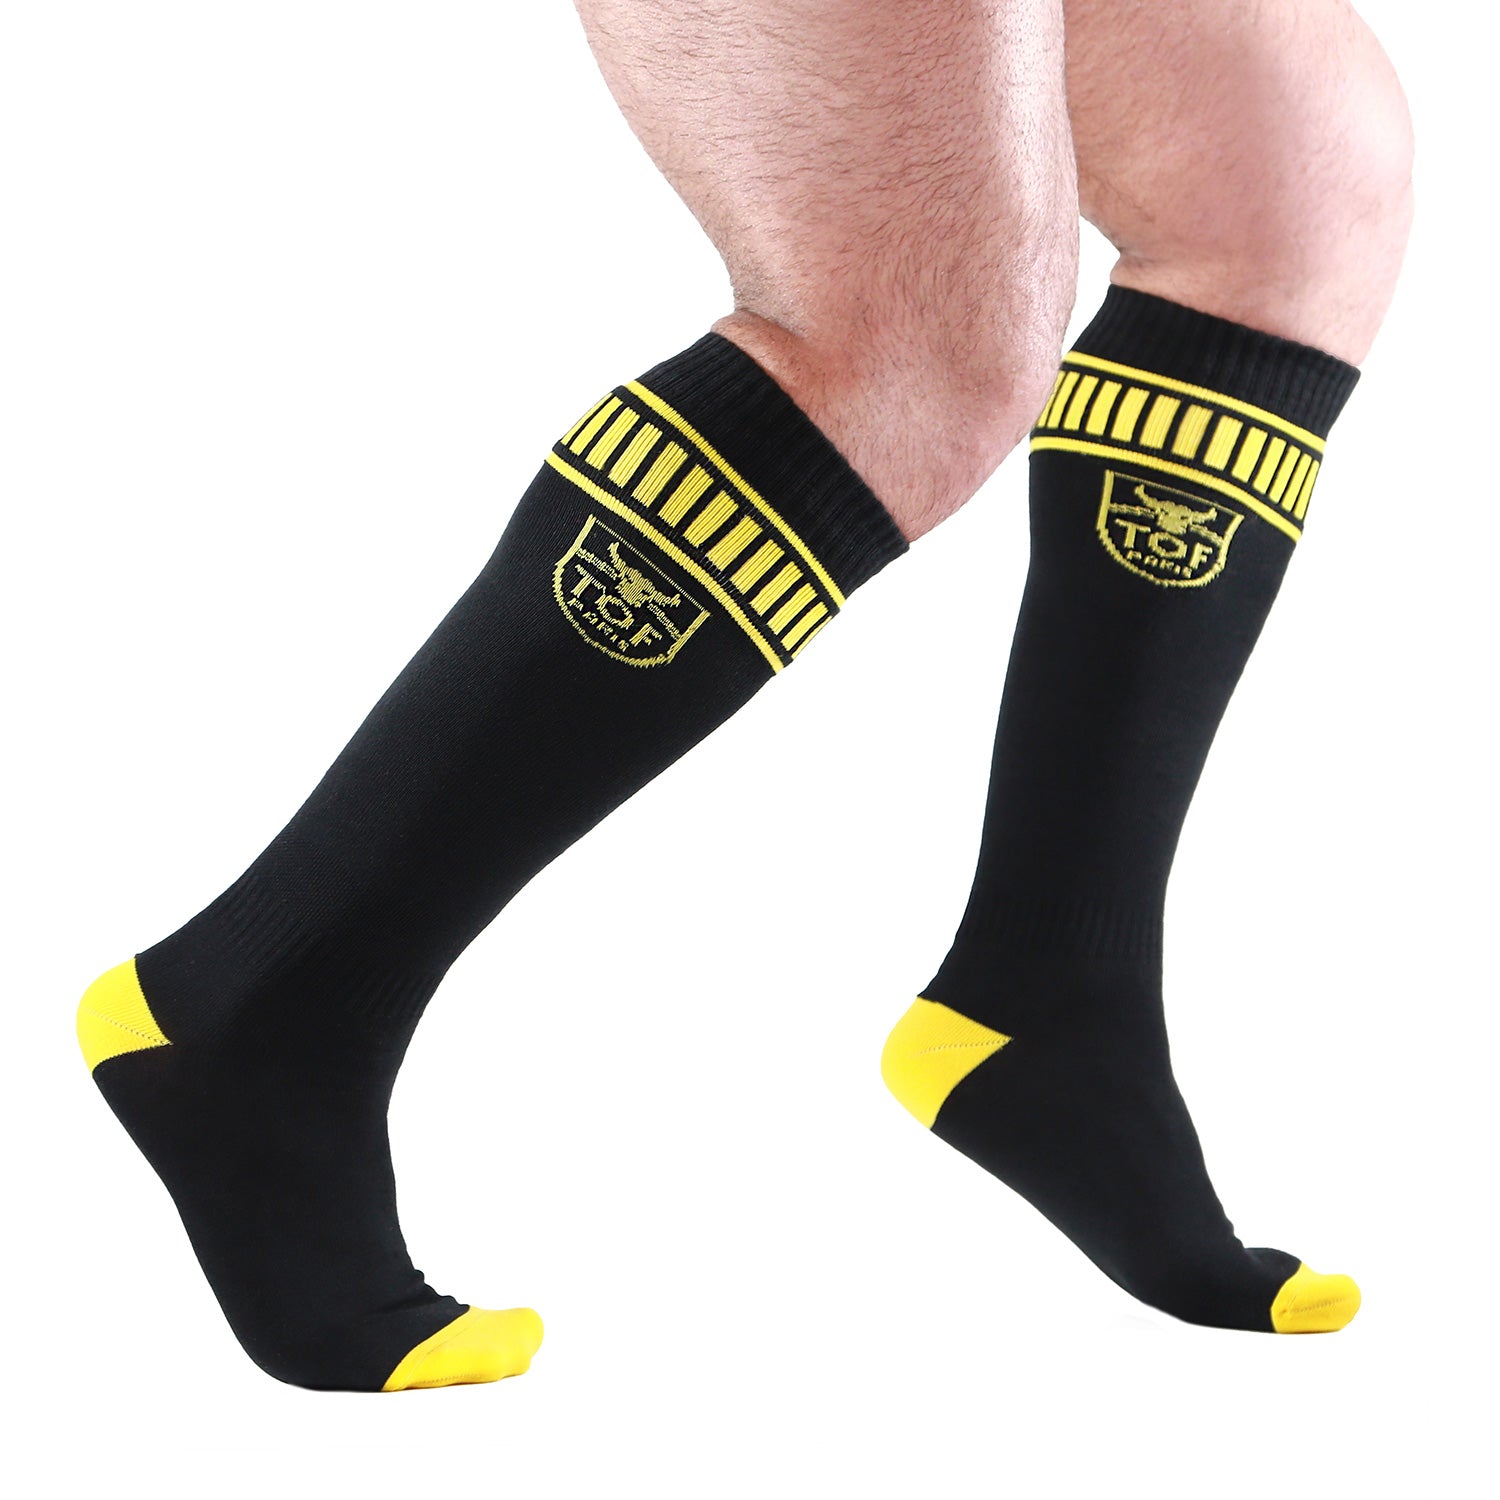 Footish Socks - Black/Yellow